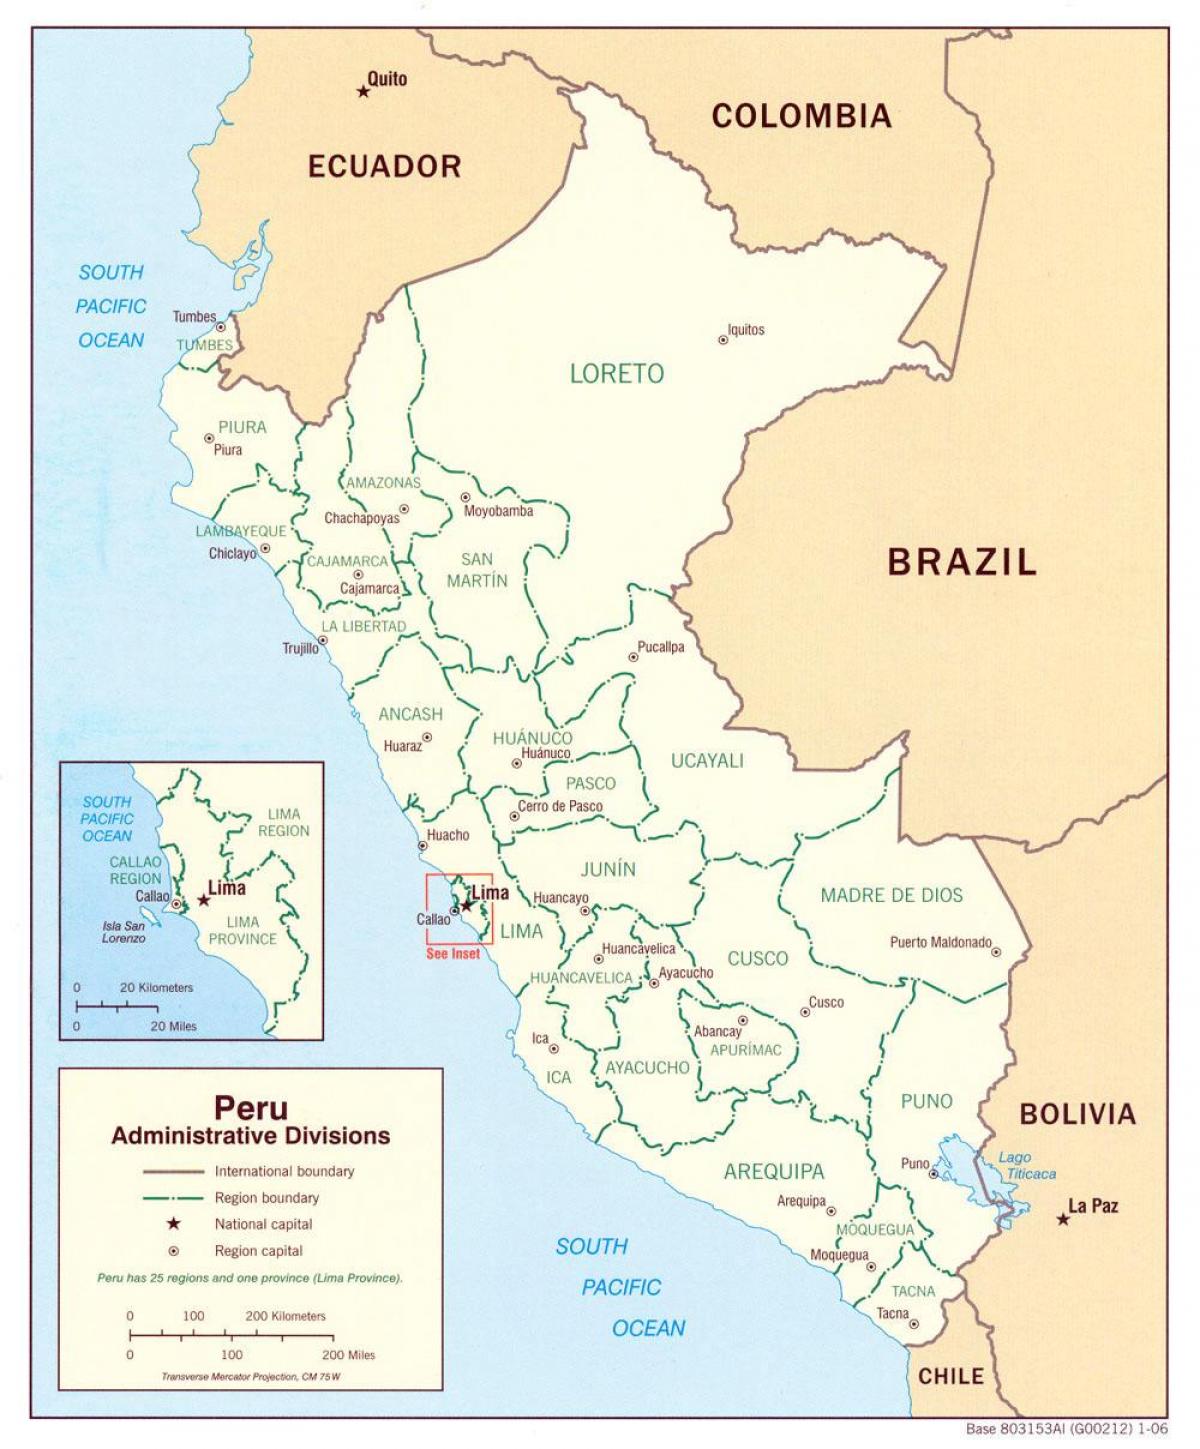 mapa na nagpapakita ng Peru